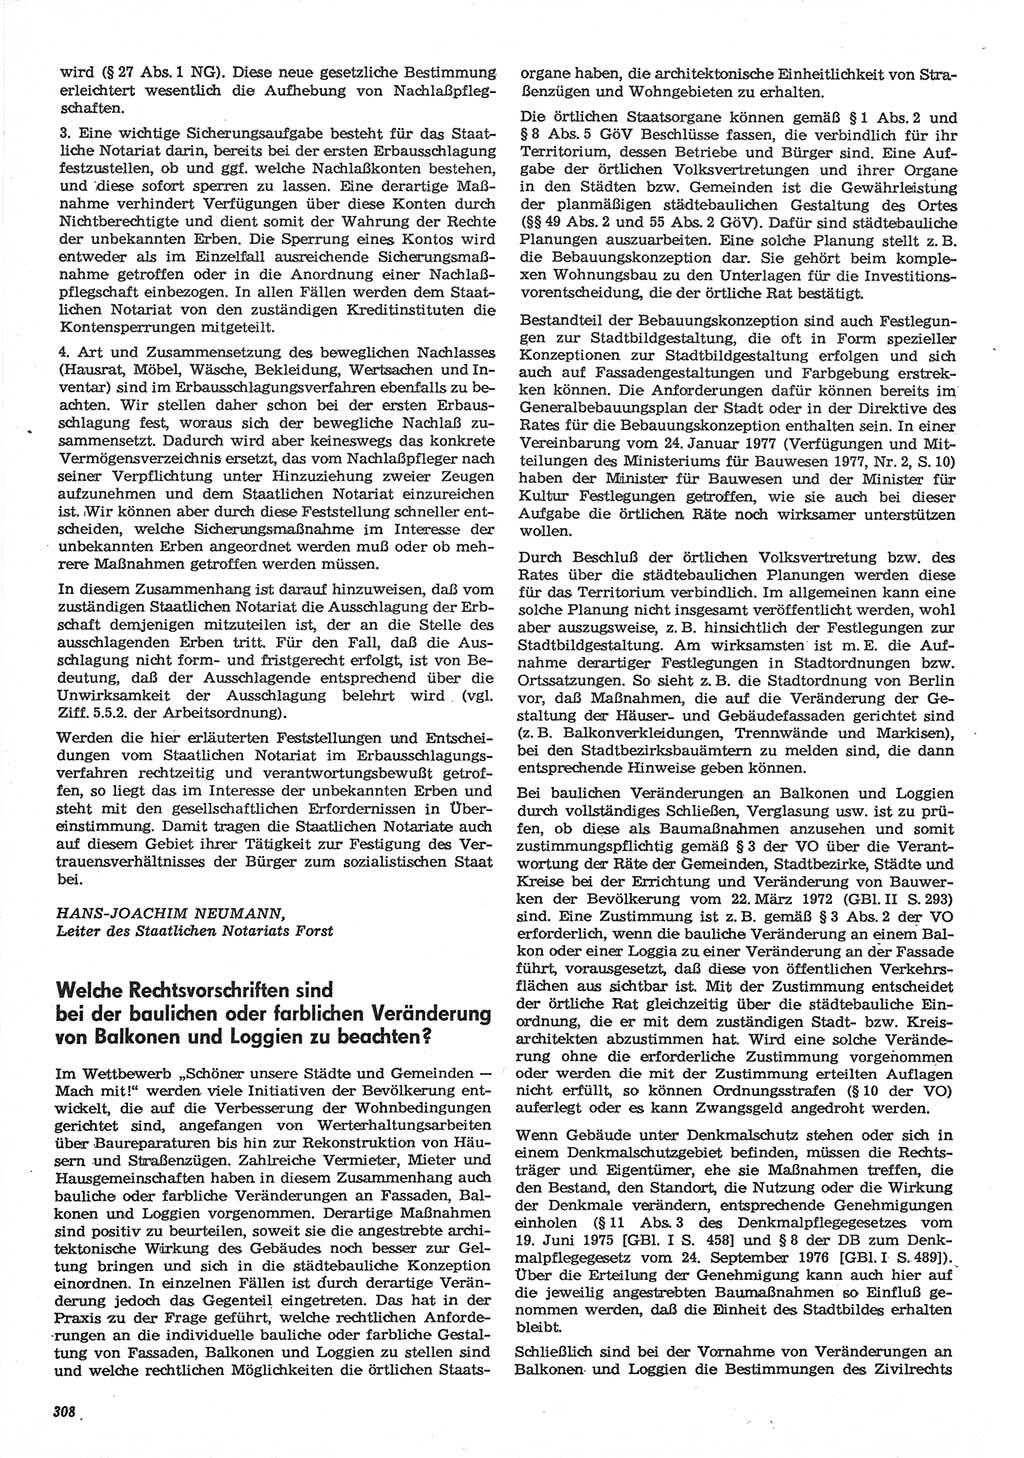 Neue Justiz (NJ), Zeitschrift für Recht und Rechtswissenschaft-Zeitschrift, sozialistisches Recht und Gesetzlichkeit, 31. Jahrgang 1977, Seite 308 (NJ DDR 1977, S. 308)